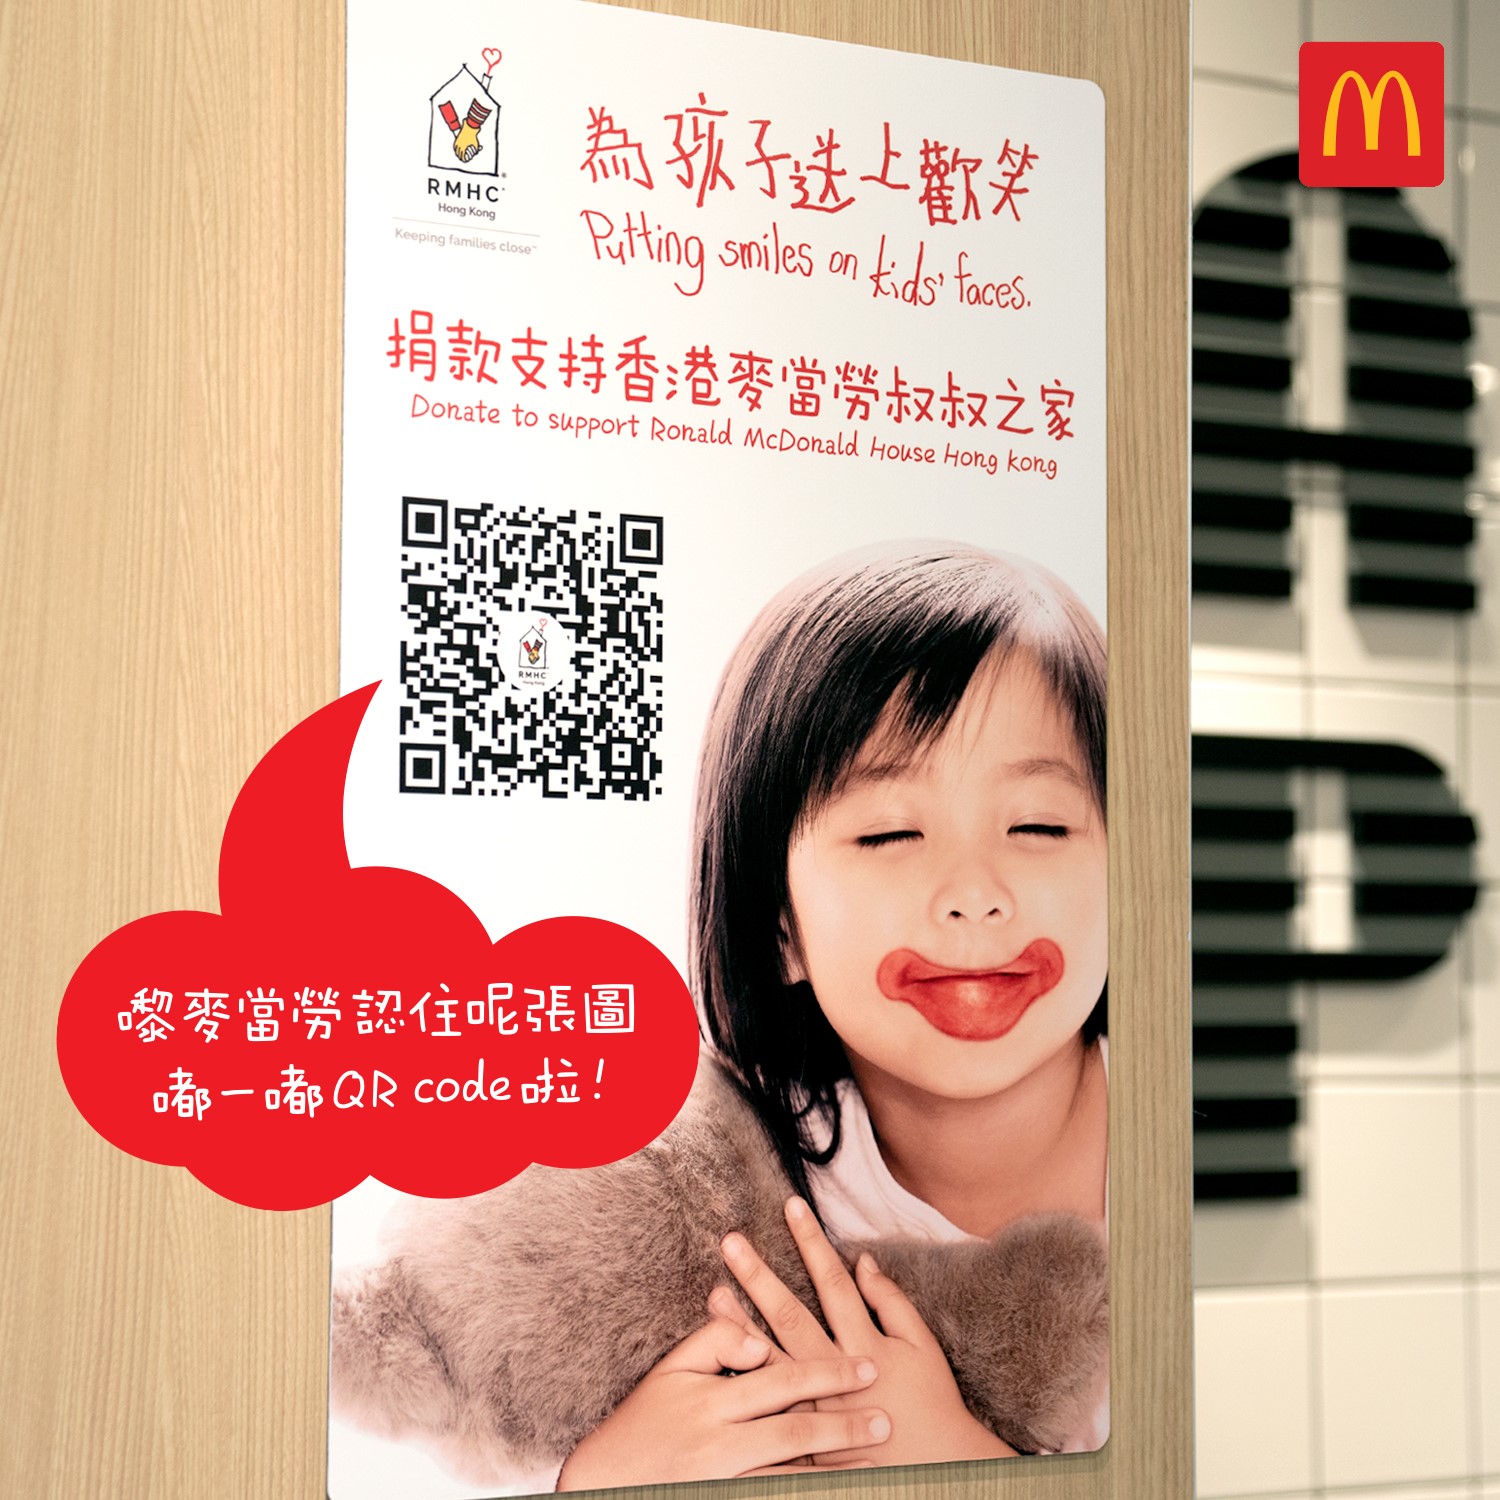 【小小心意❤️為香港麥當勞叔叔之家送上歡笑】 香港麥當勞叔叔之家一直幫助患病嘅小朋友，提供「家以外的家」令家人可以多啲陪喺身邊照顧佢哋。 你都想為佢哋送上祝福？你可以Click呢條Link即刻捐款：festivalwalk 又或者認住呢張圖，下次嚟麥當勞買嘢食嘟一嘟個QR code都得㗎！